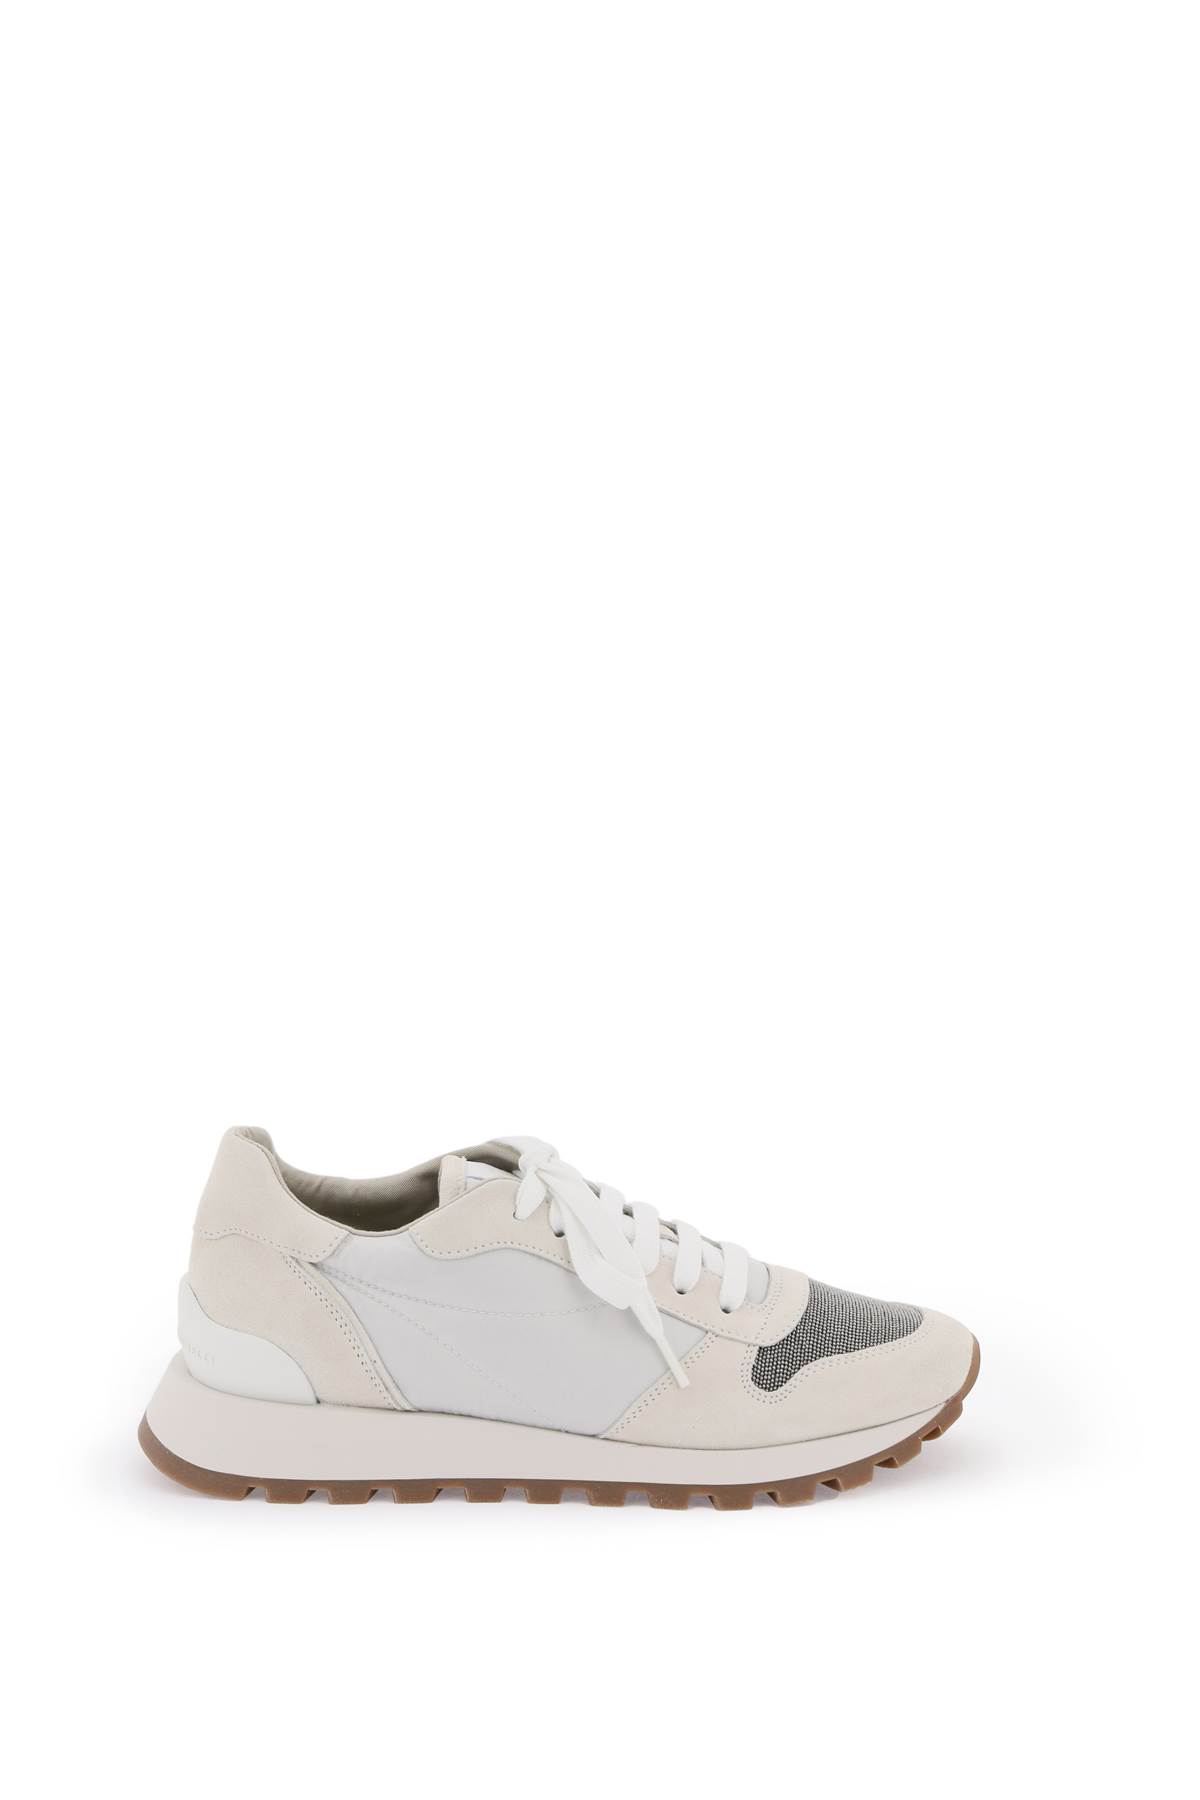 Shop Brunello Cucinelli Sneakers With Monili Toe In White